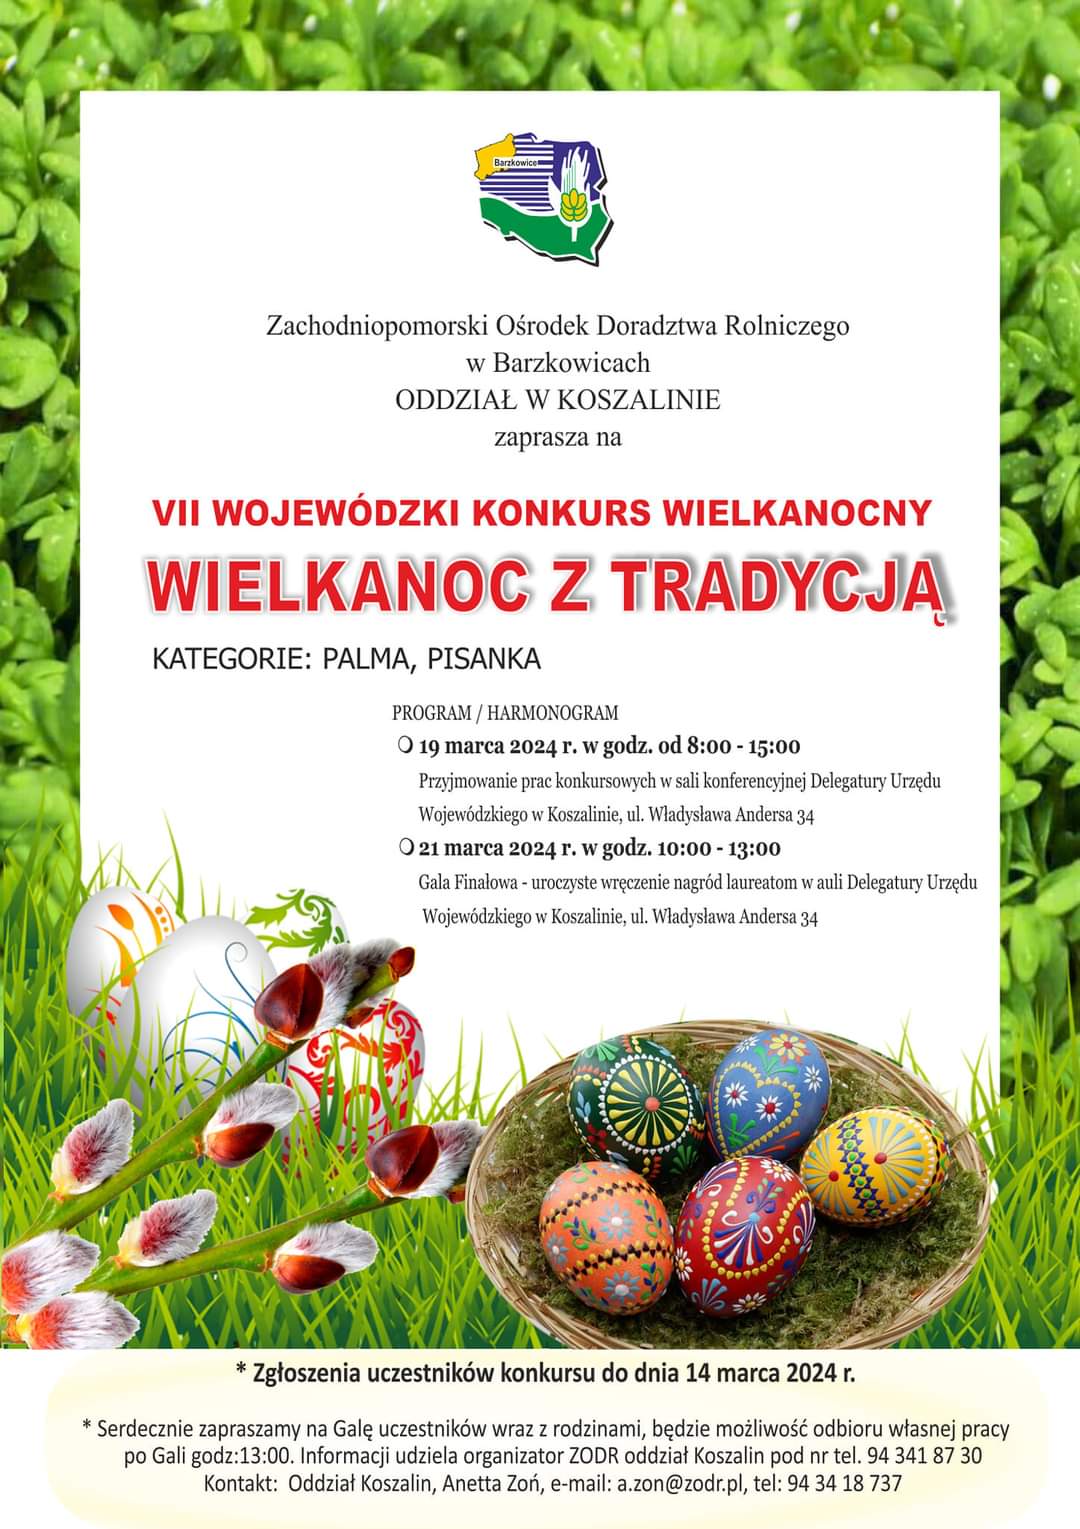 Plakat z zaproszeniem do udziału w 7 wojewódzkim konkursie wielkanocnym wielkanoc z tradycją